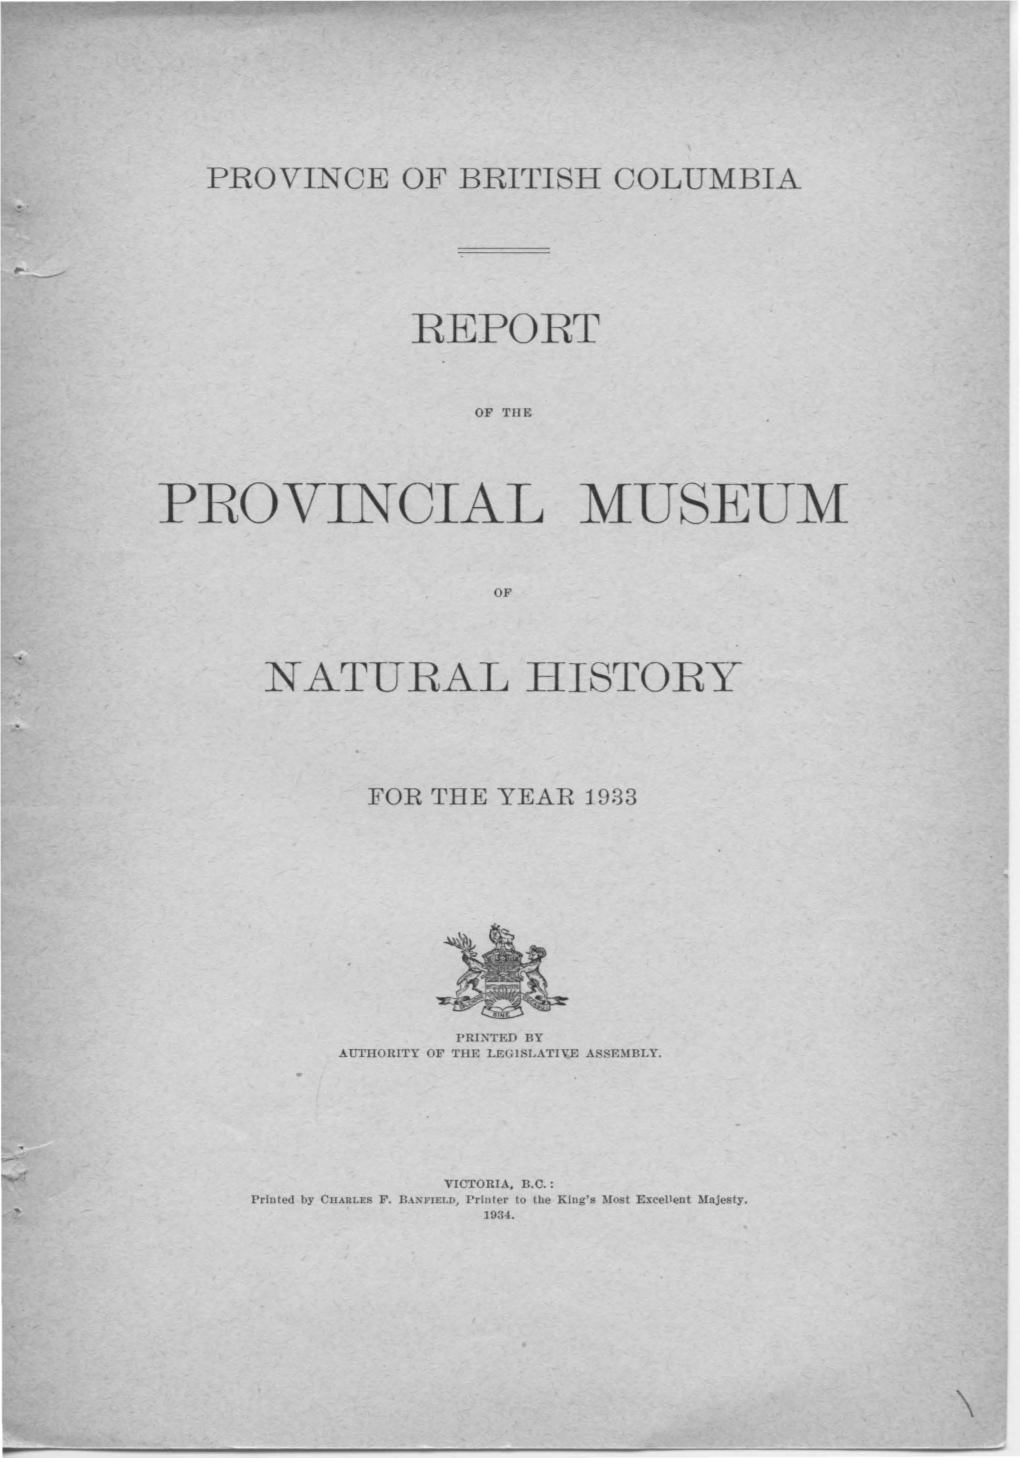 Provincial Museum